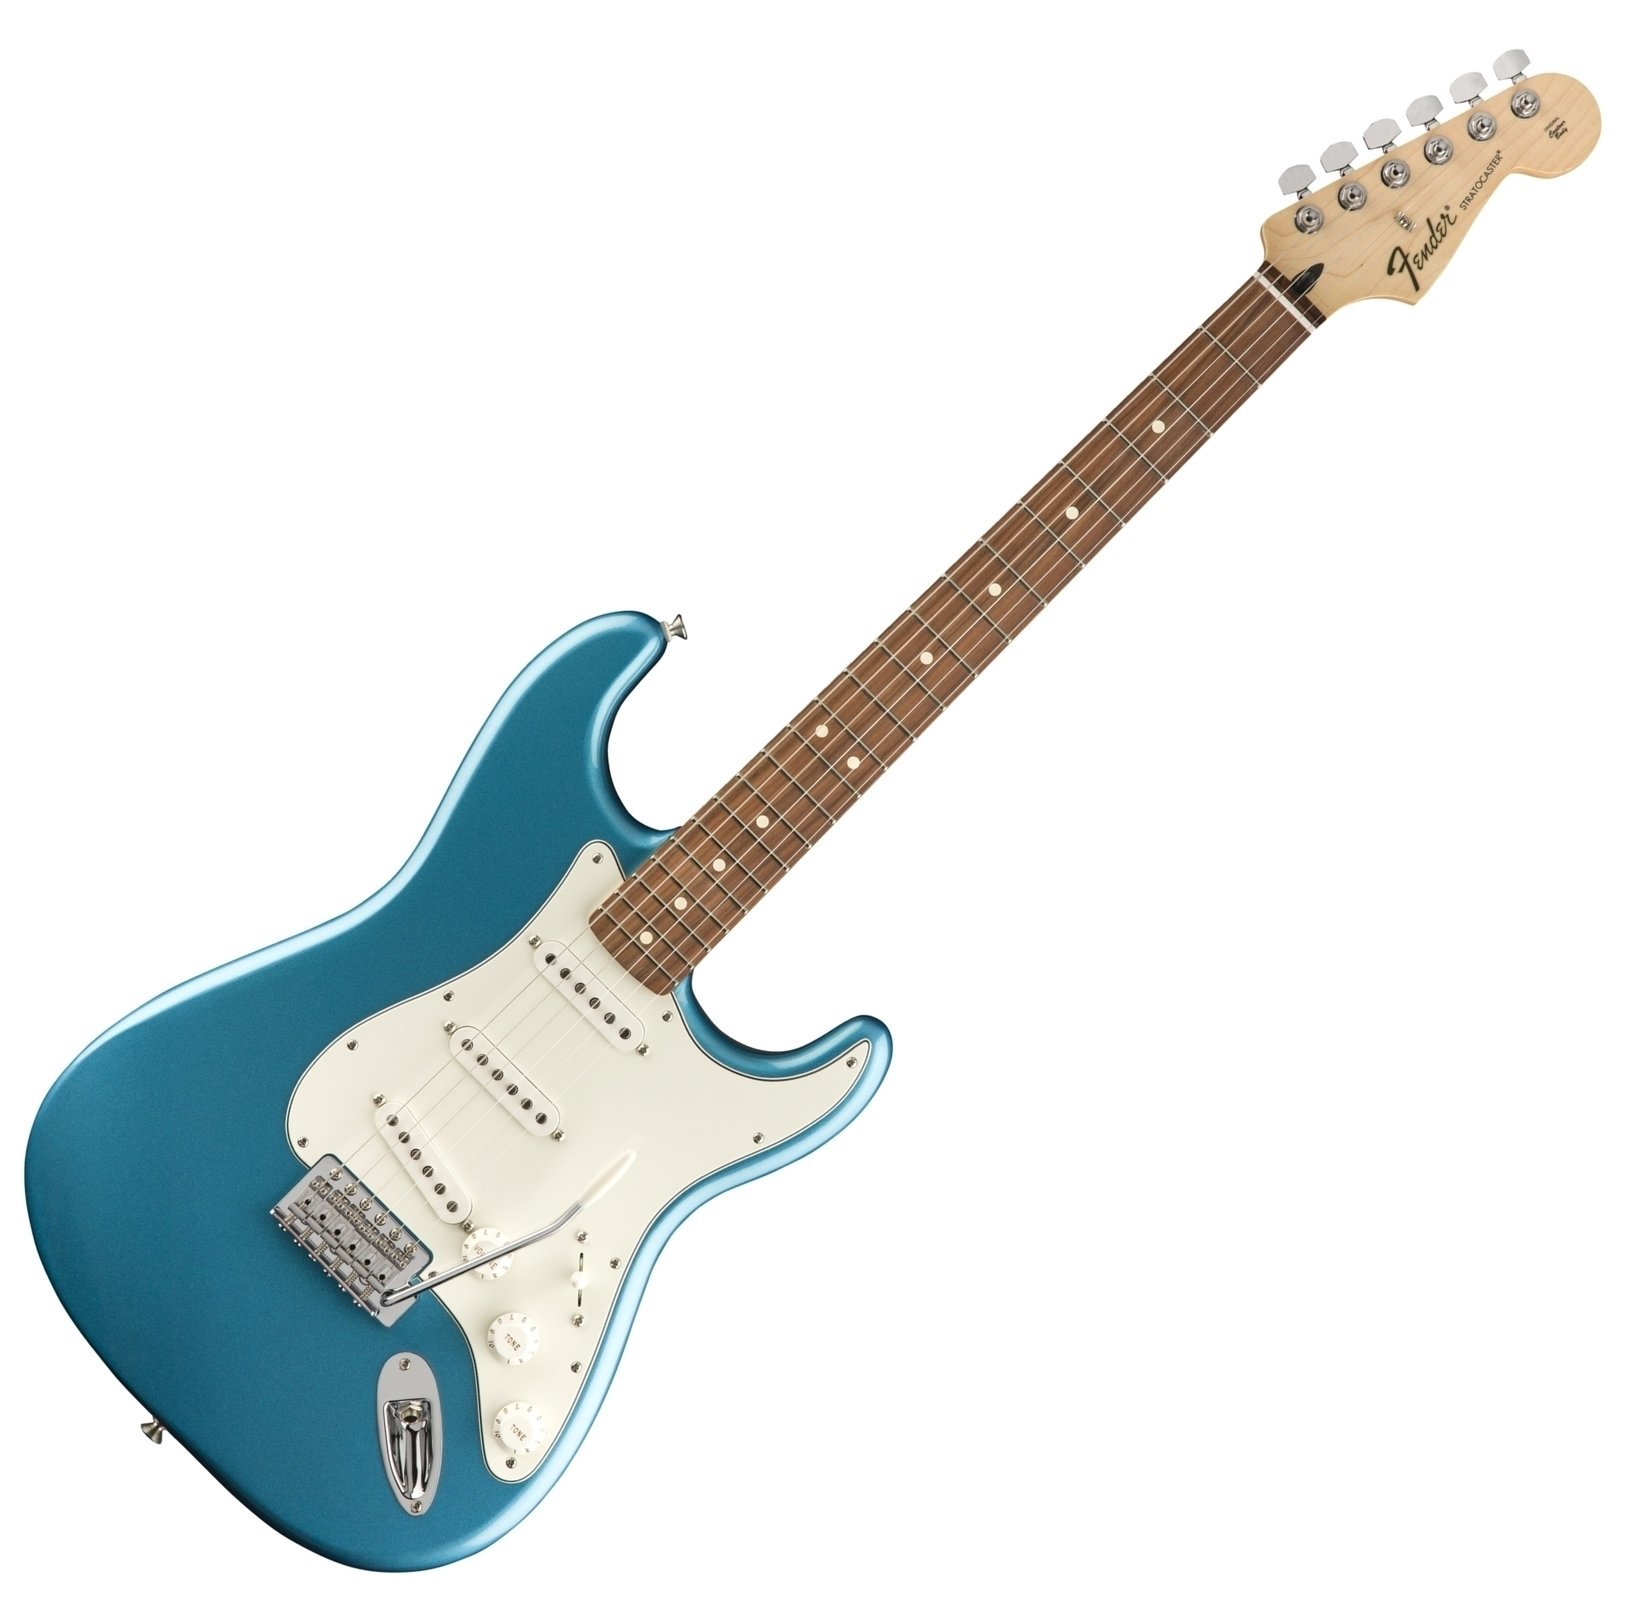 Sähkökitara Fender Standard Stratocaster Pau Ferro Lake Placid Blue